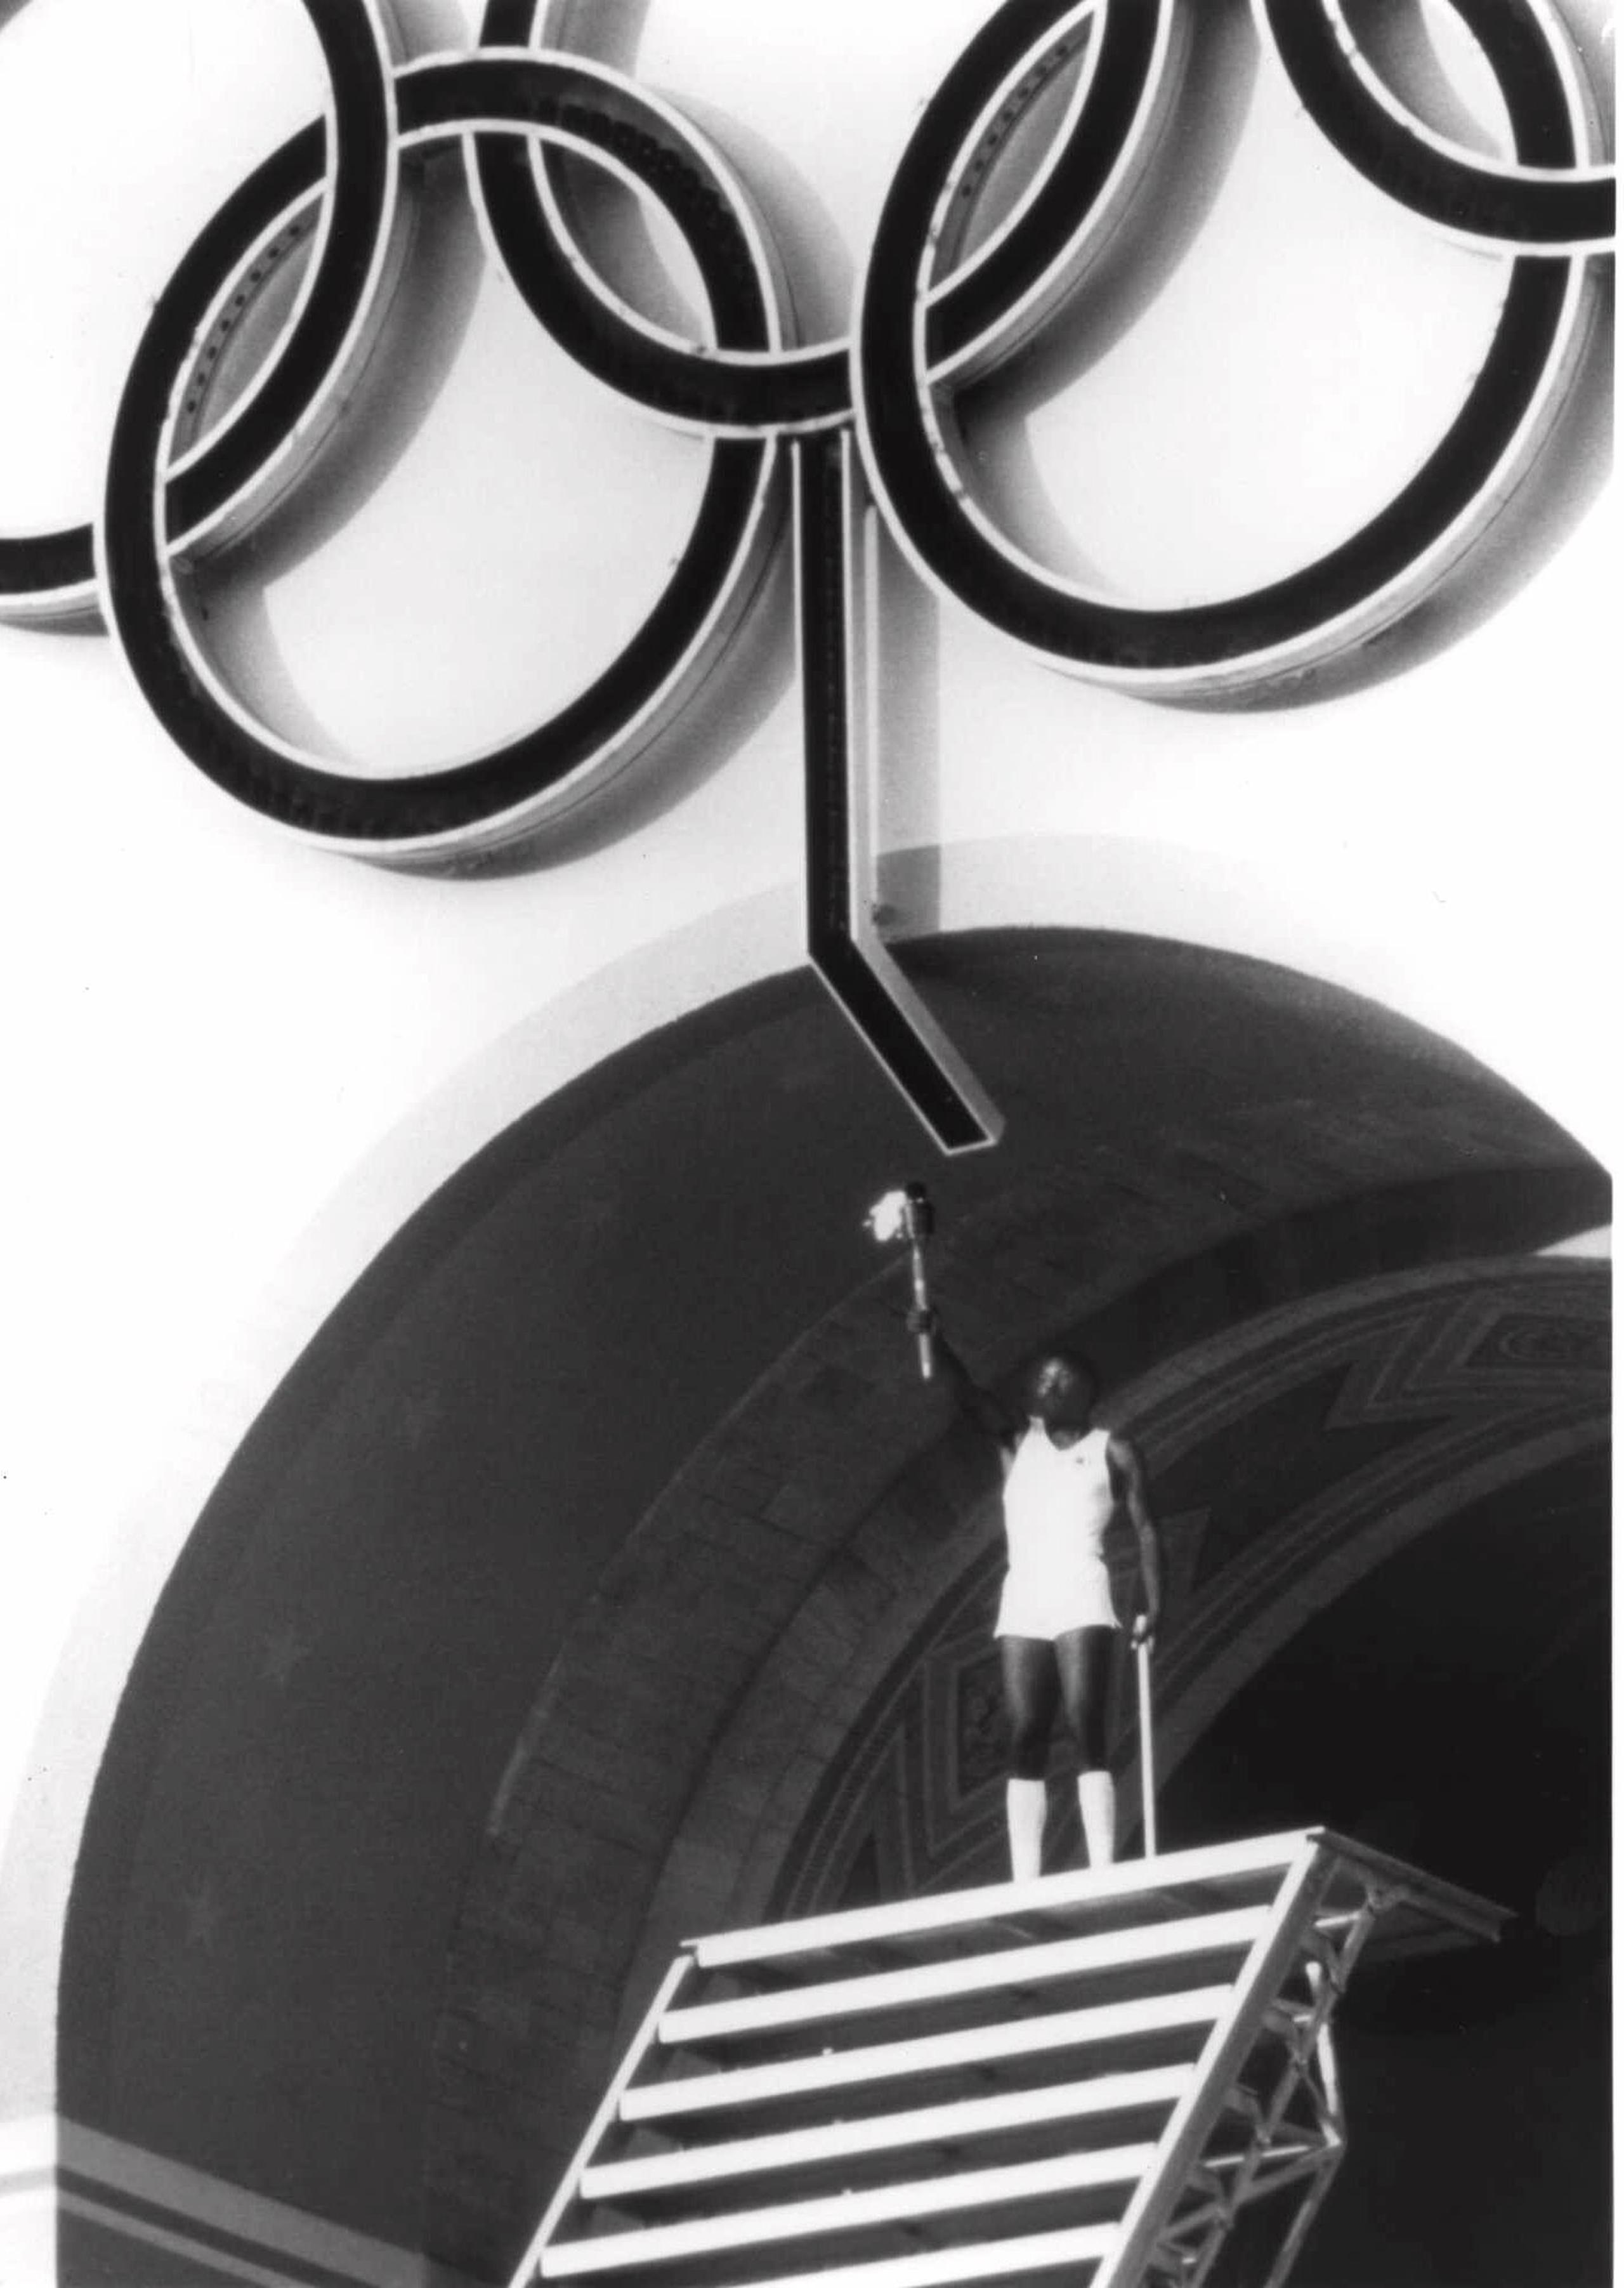 El atleta olímpico Rafer Johnson levanta la antorcha en Los Angeles Memorial Coliseum durante la ceremonia de apertura de los Juegos Olímpicos de 1984.